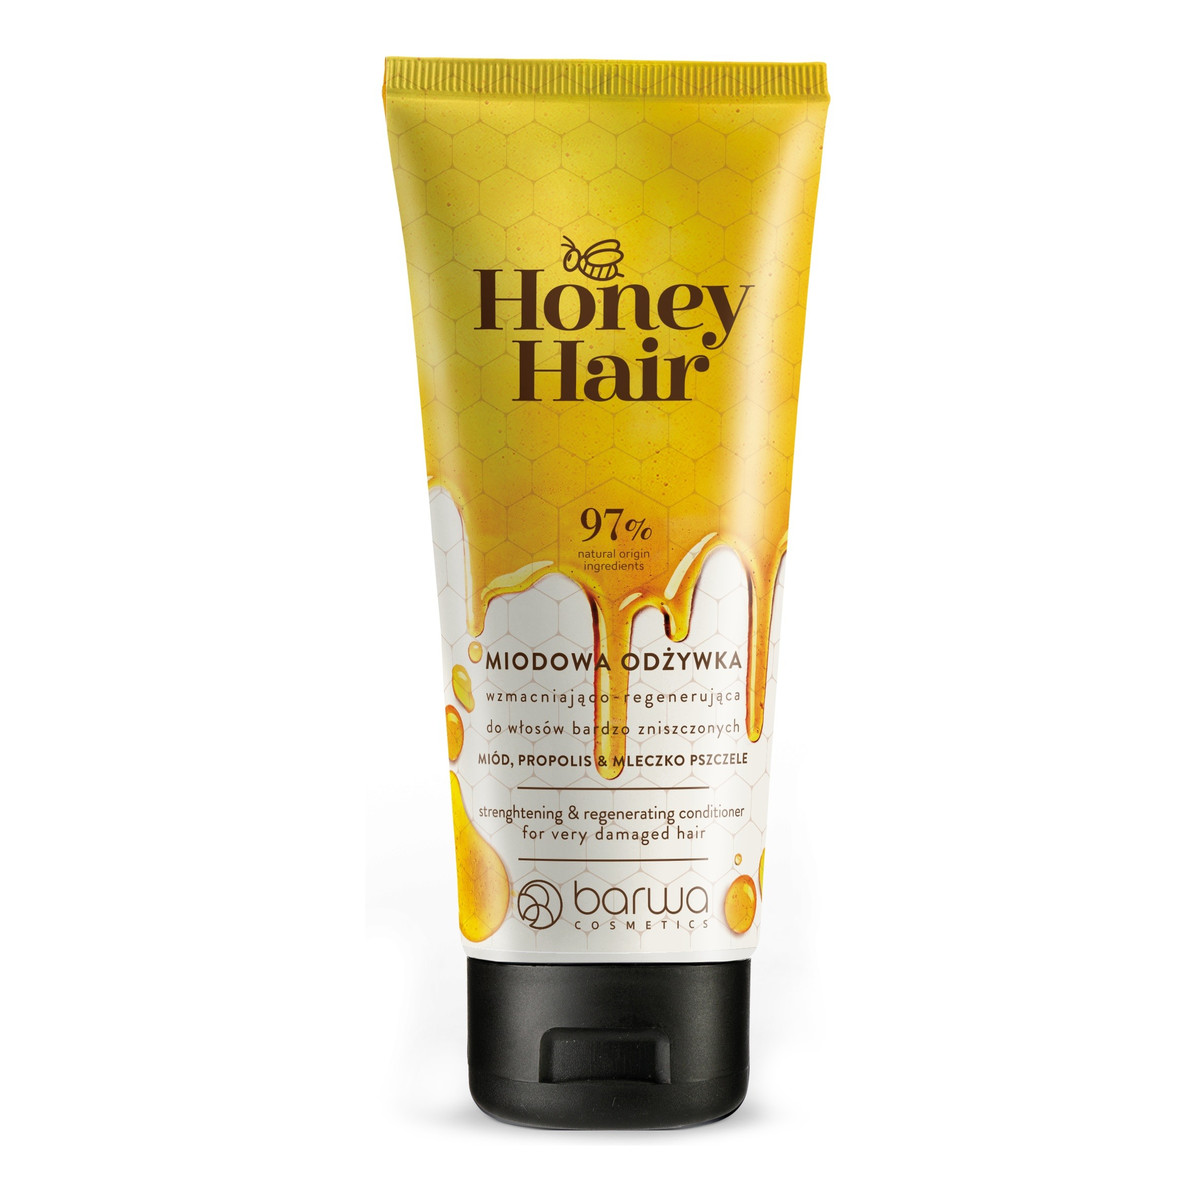 Barwa Honey Hair Odżywka wzmacniająco-regenerująca do włosów bardzo zniszczonych 200ml